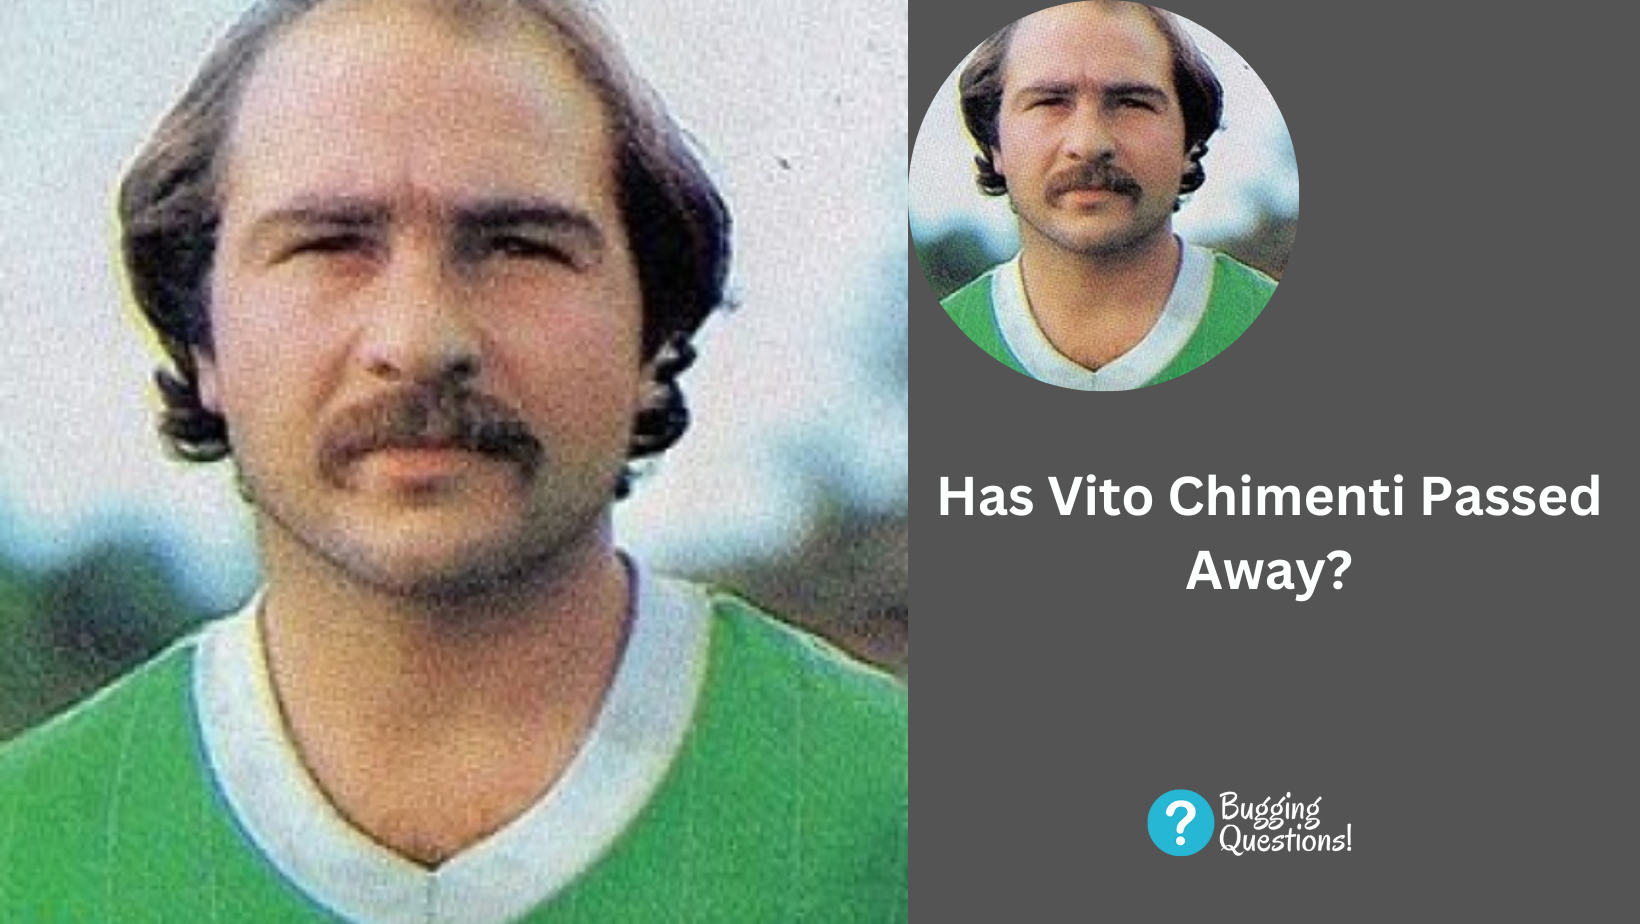 Has Vito Chimenti Passed Away?